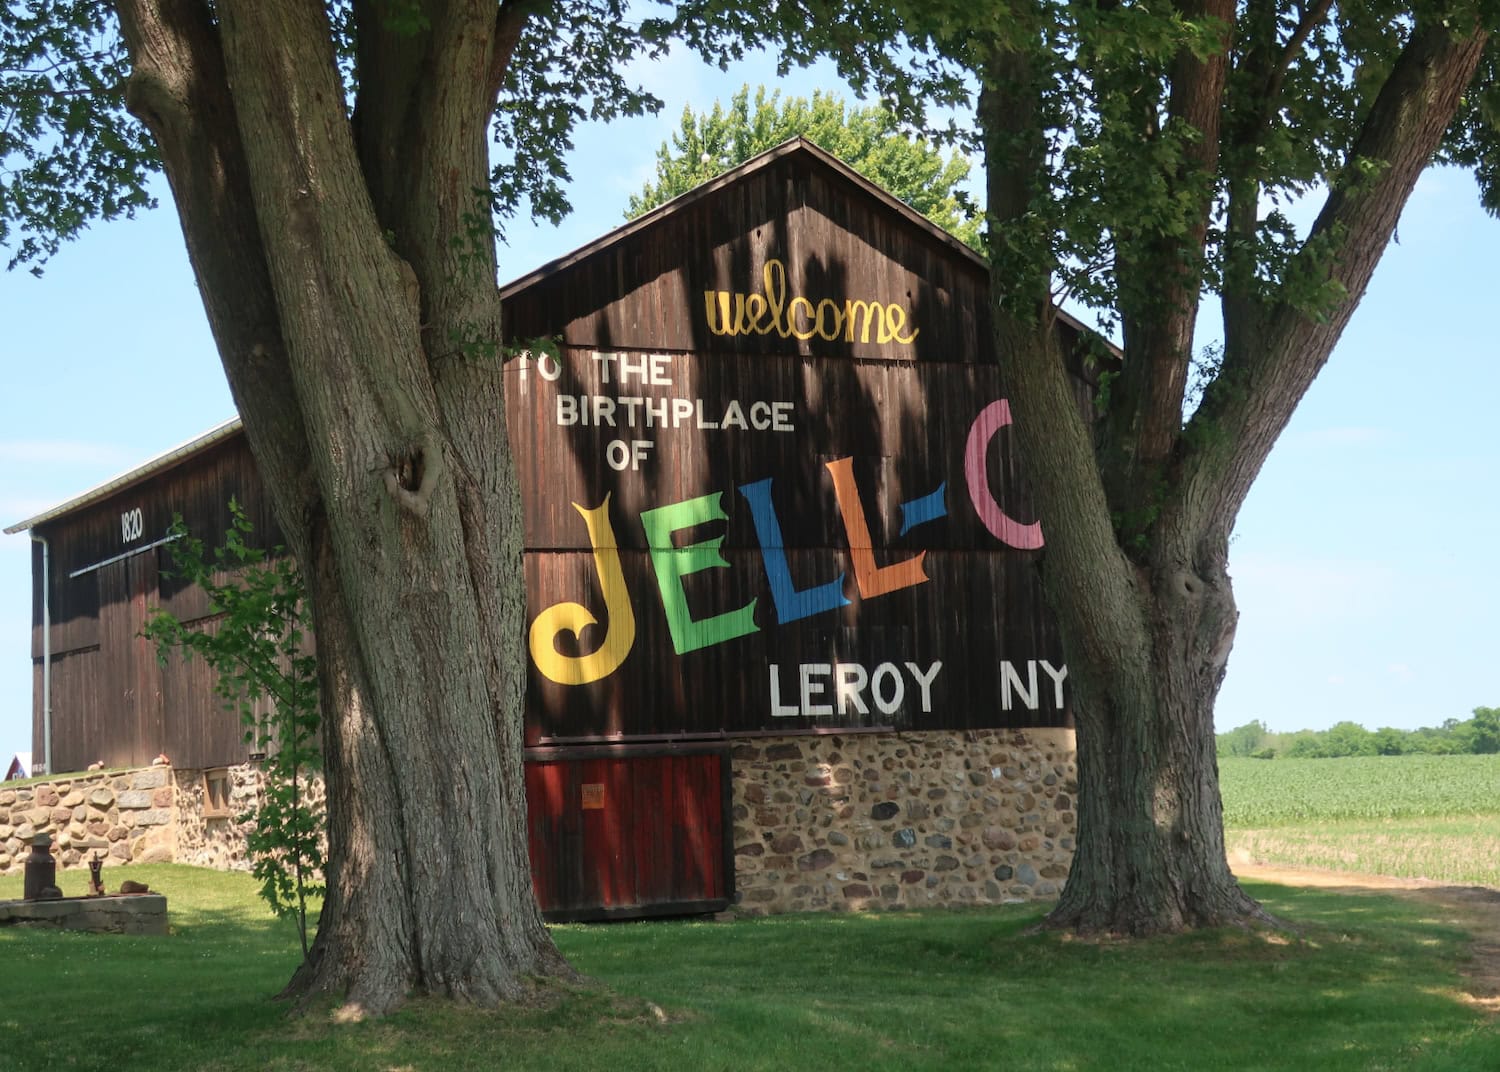 Jell-O Barn Painting, LeRoy NY